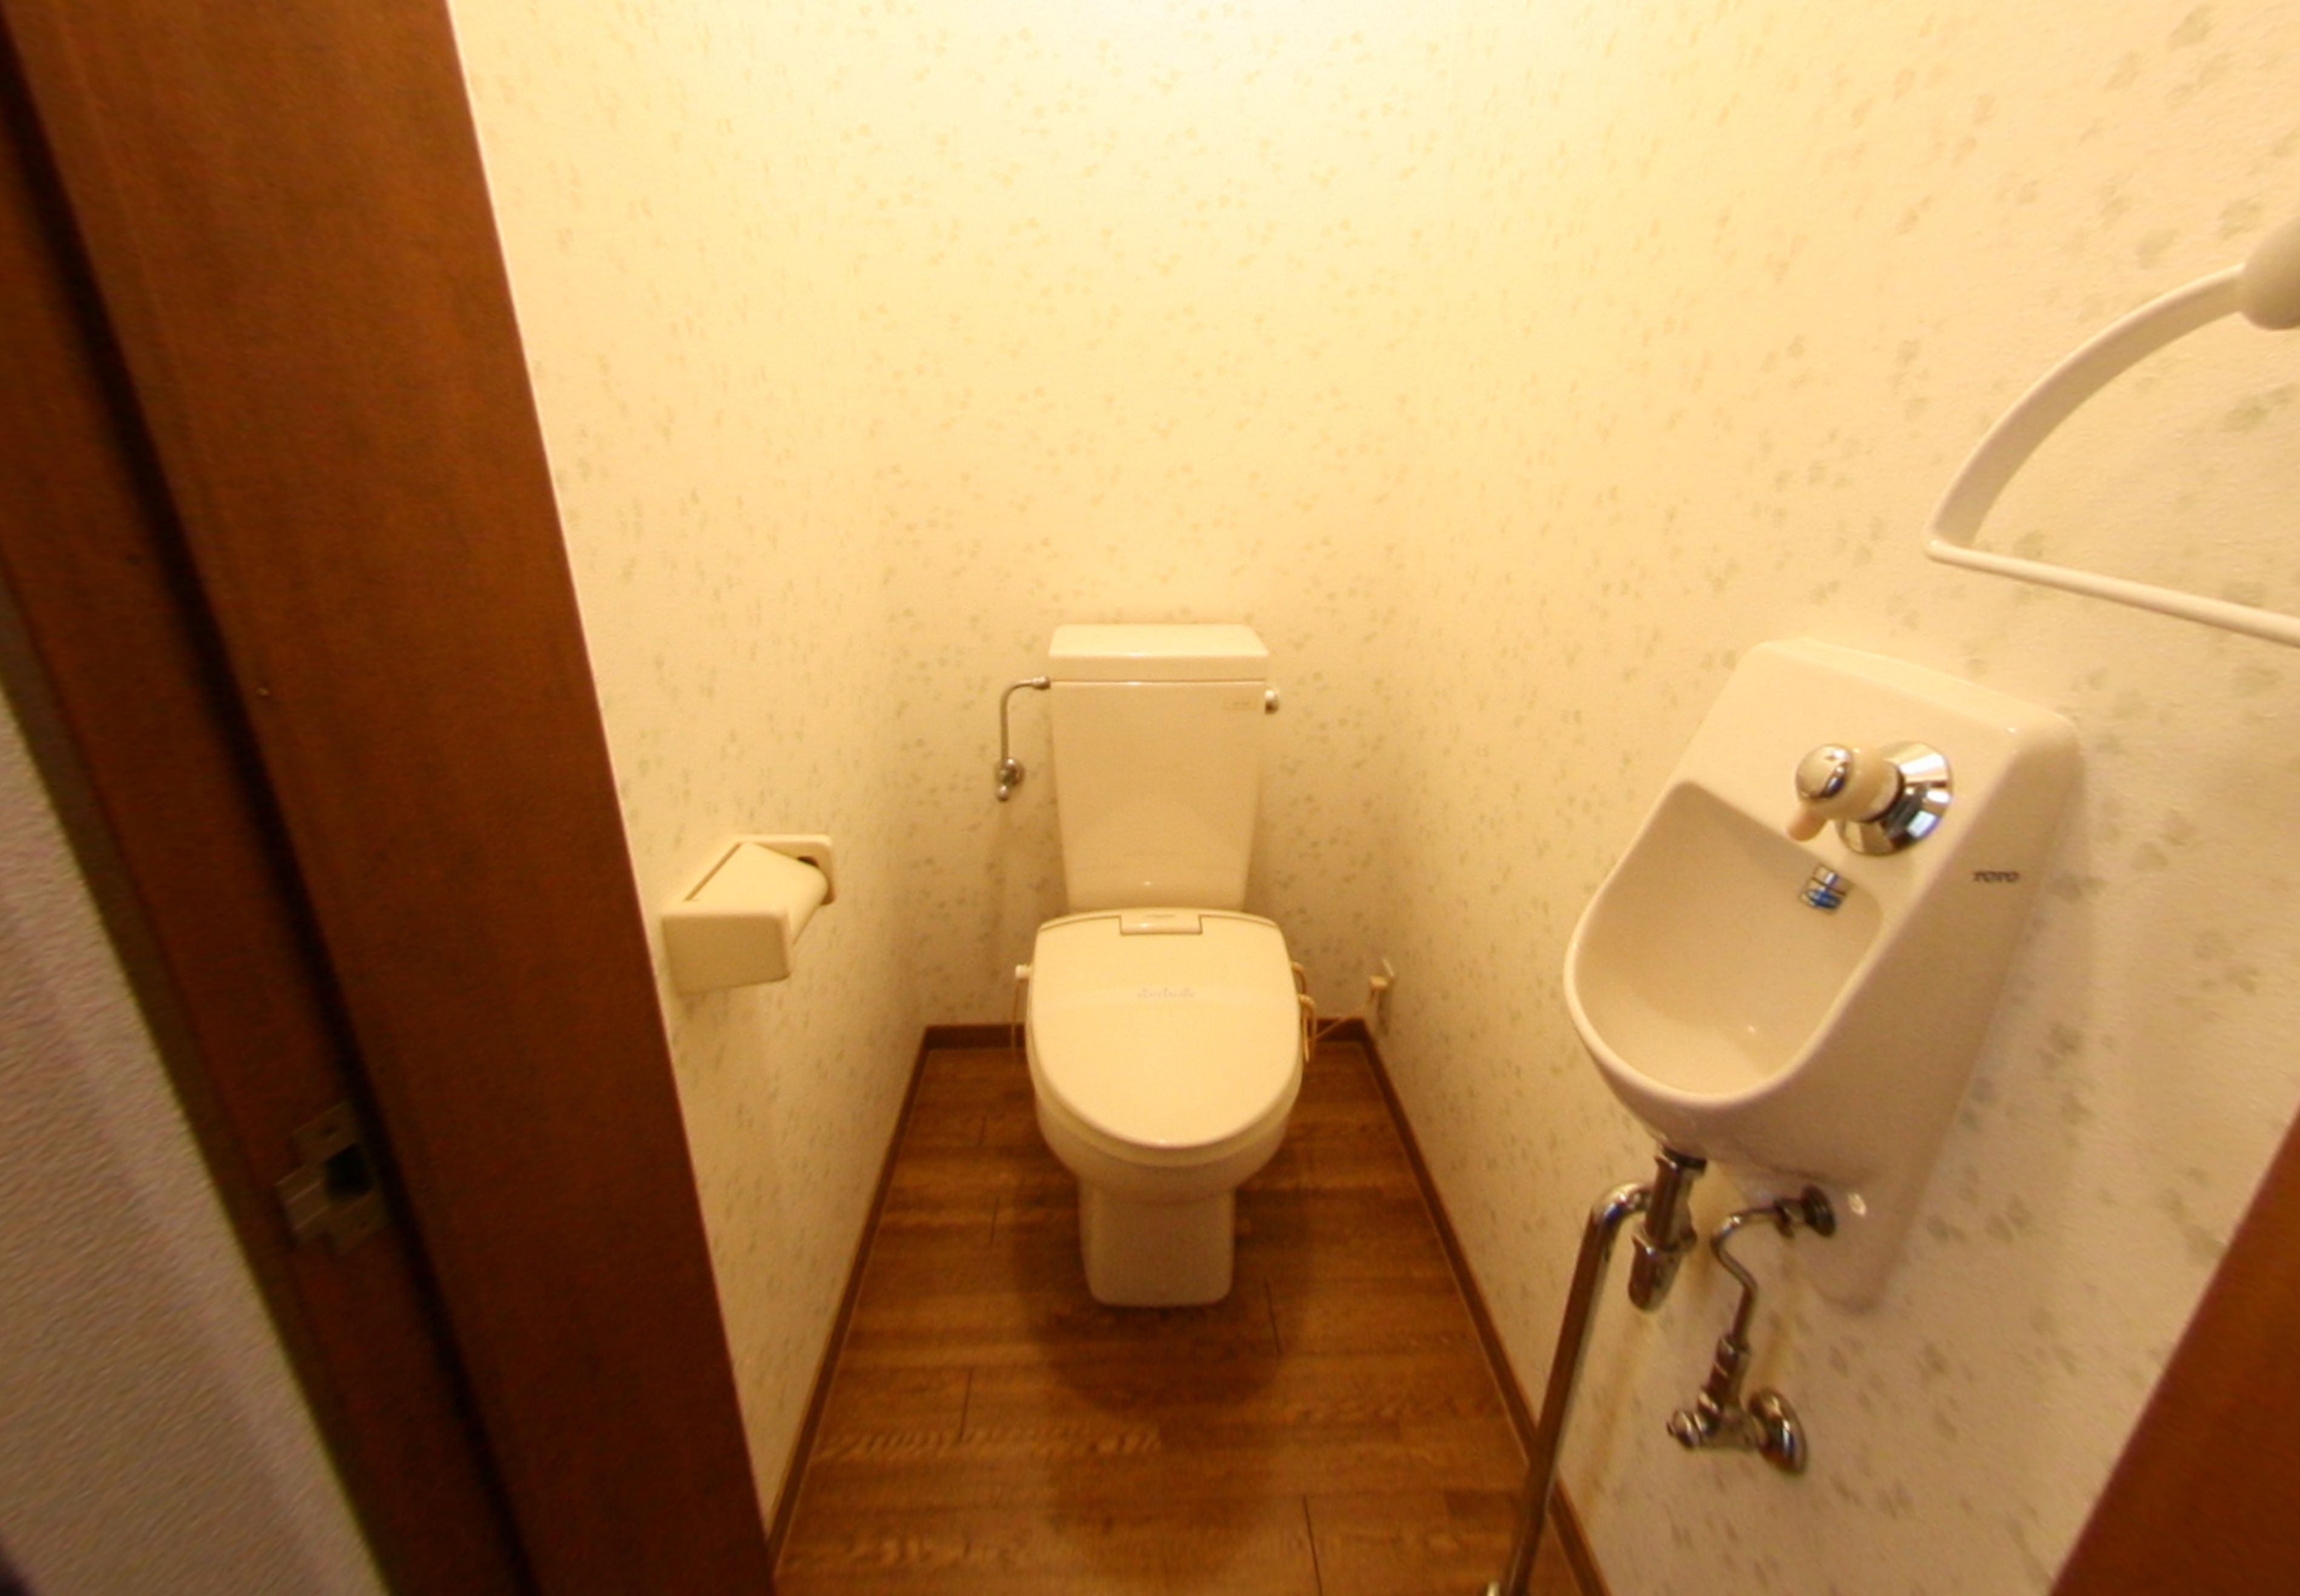 Toilet. toilet ☆